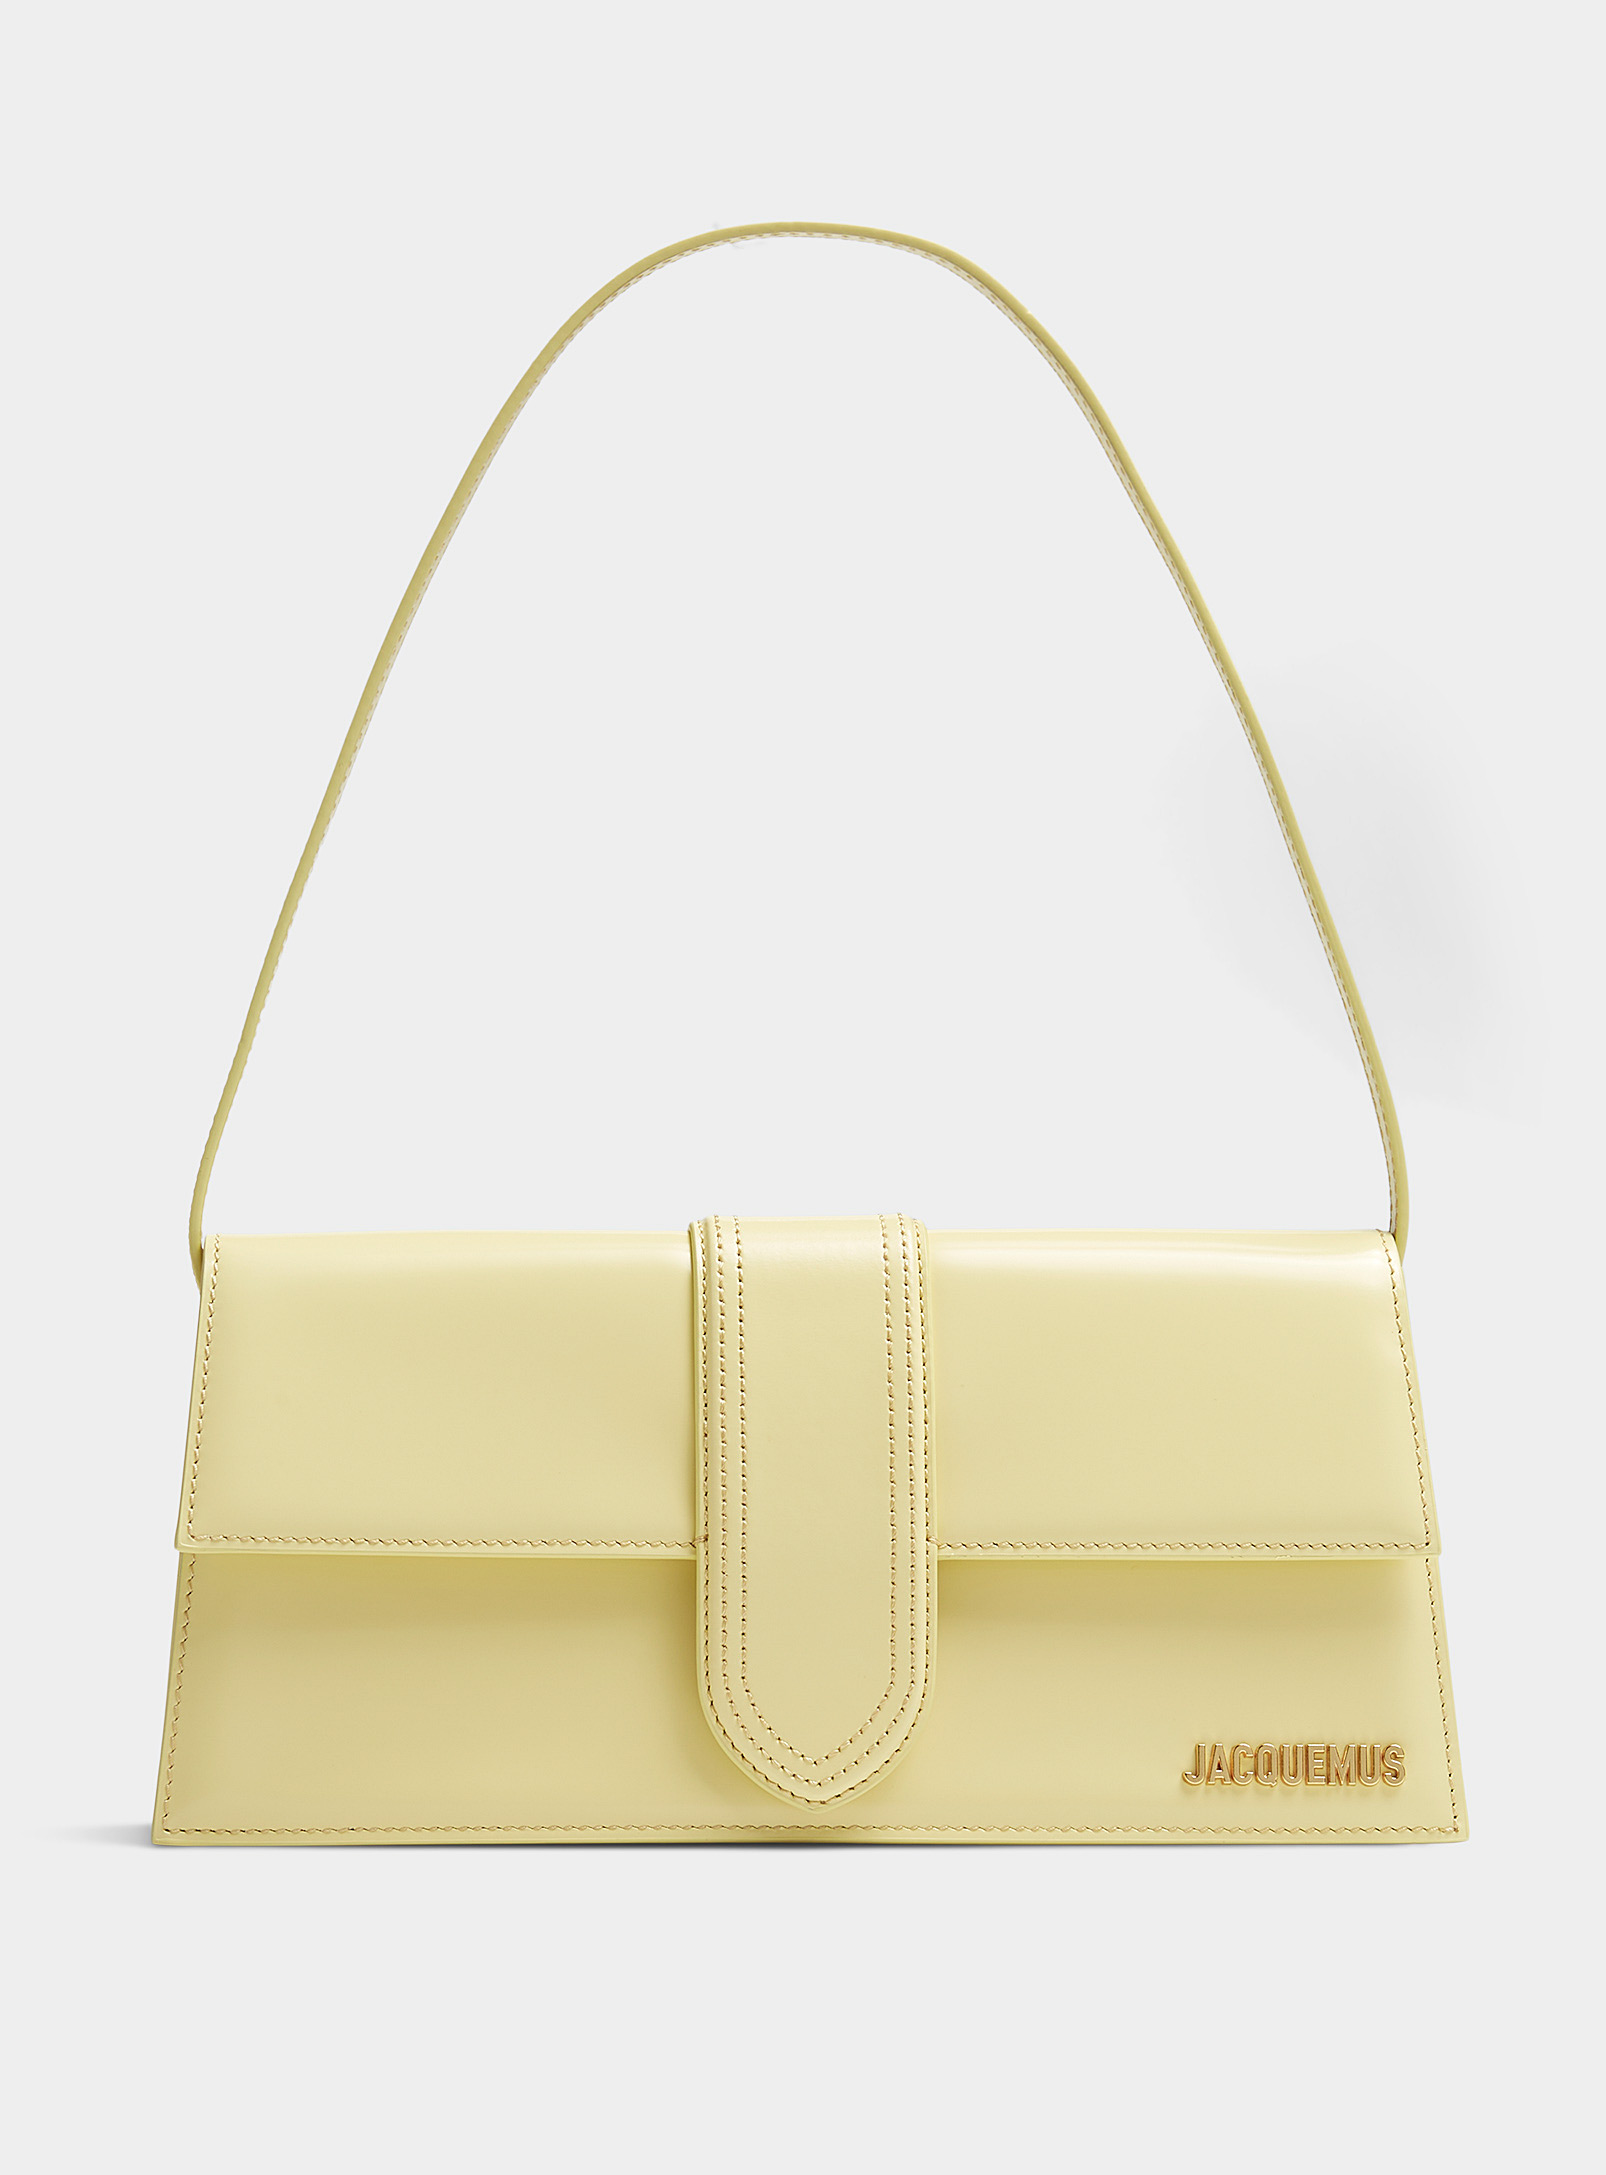 Jacquemus - Women's Bambino long corn yellow bag